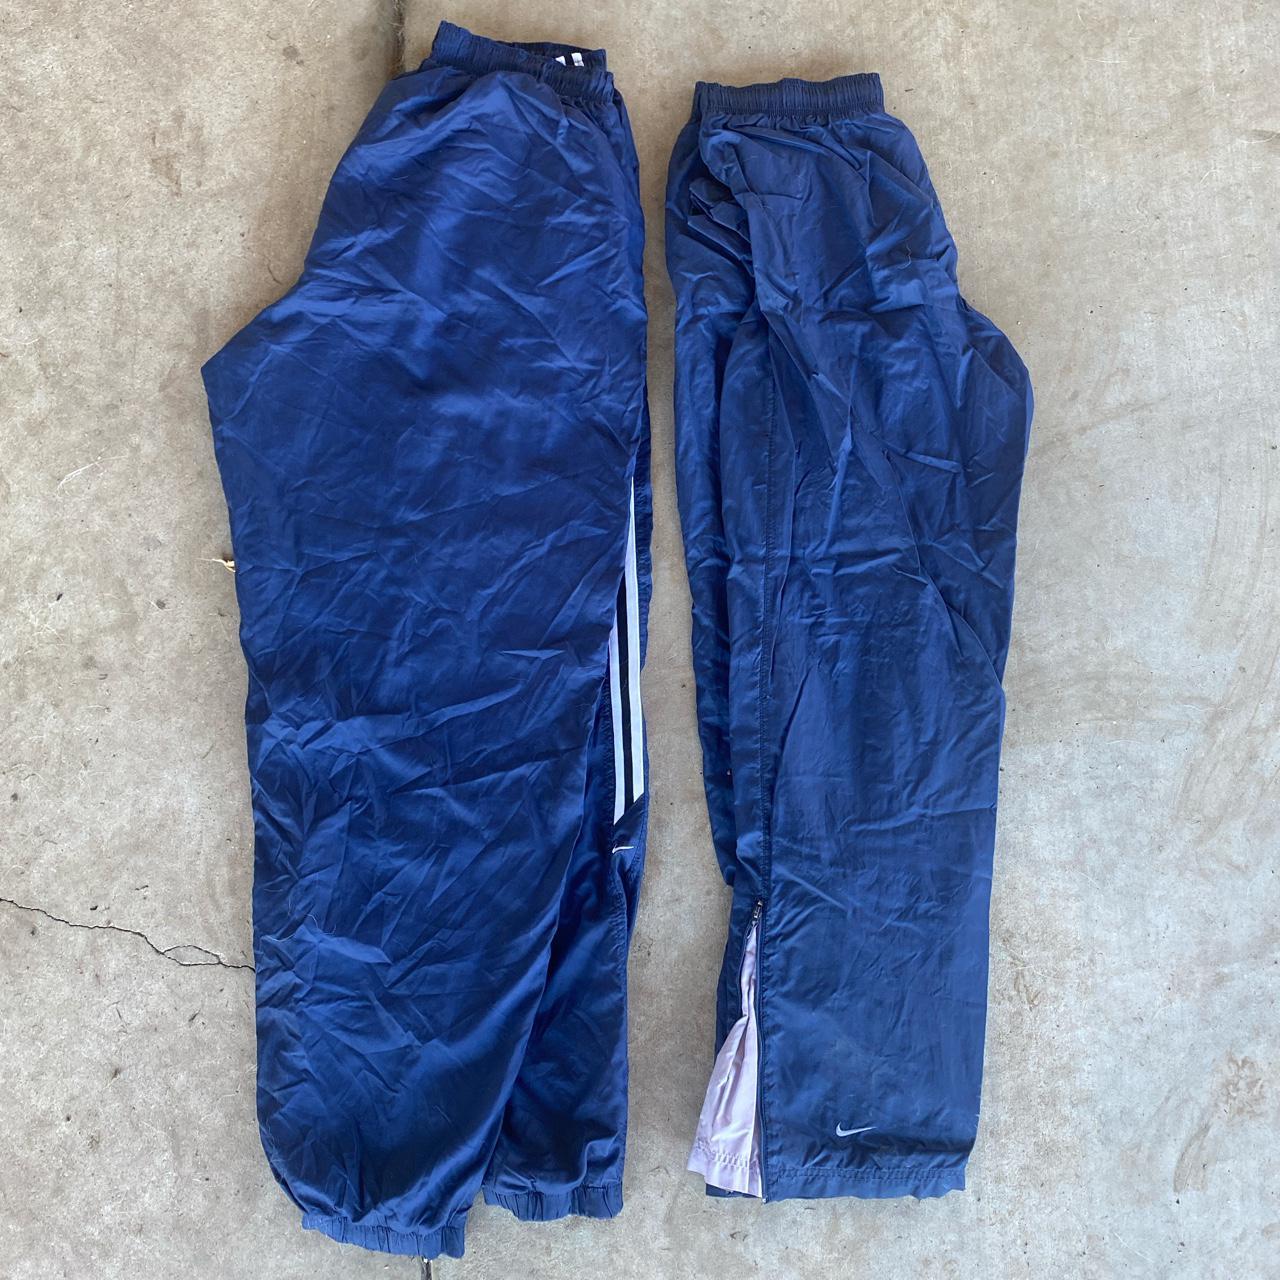 Vintage 2000s pair of Nike sweatpants track pants... - Depop